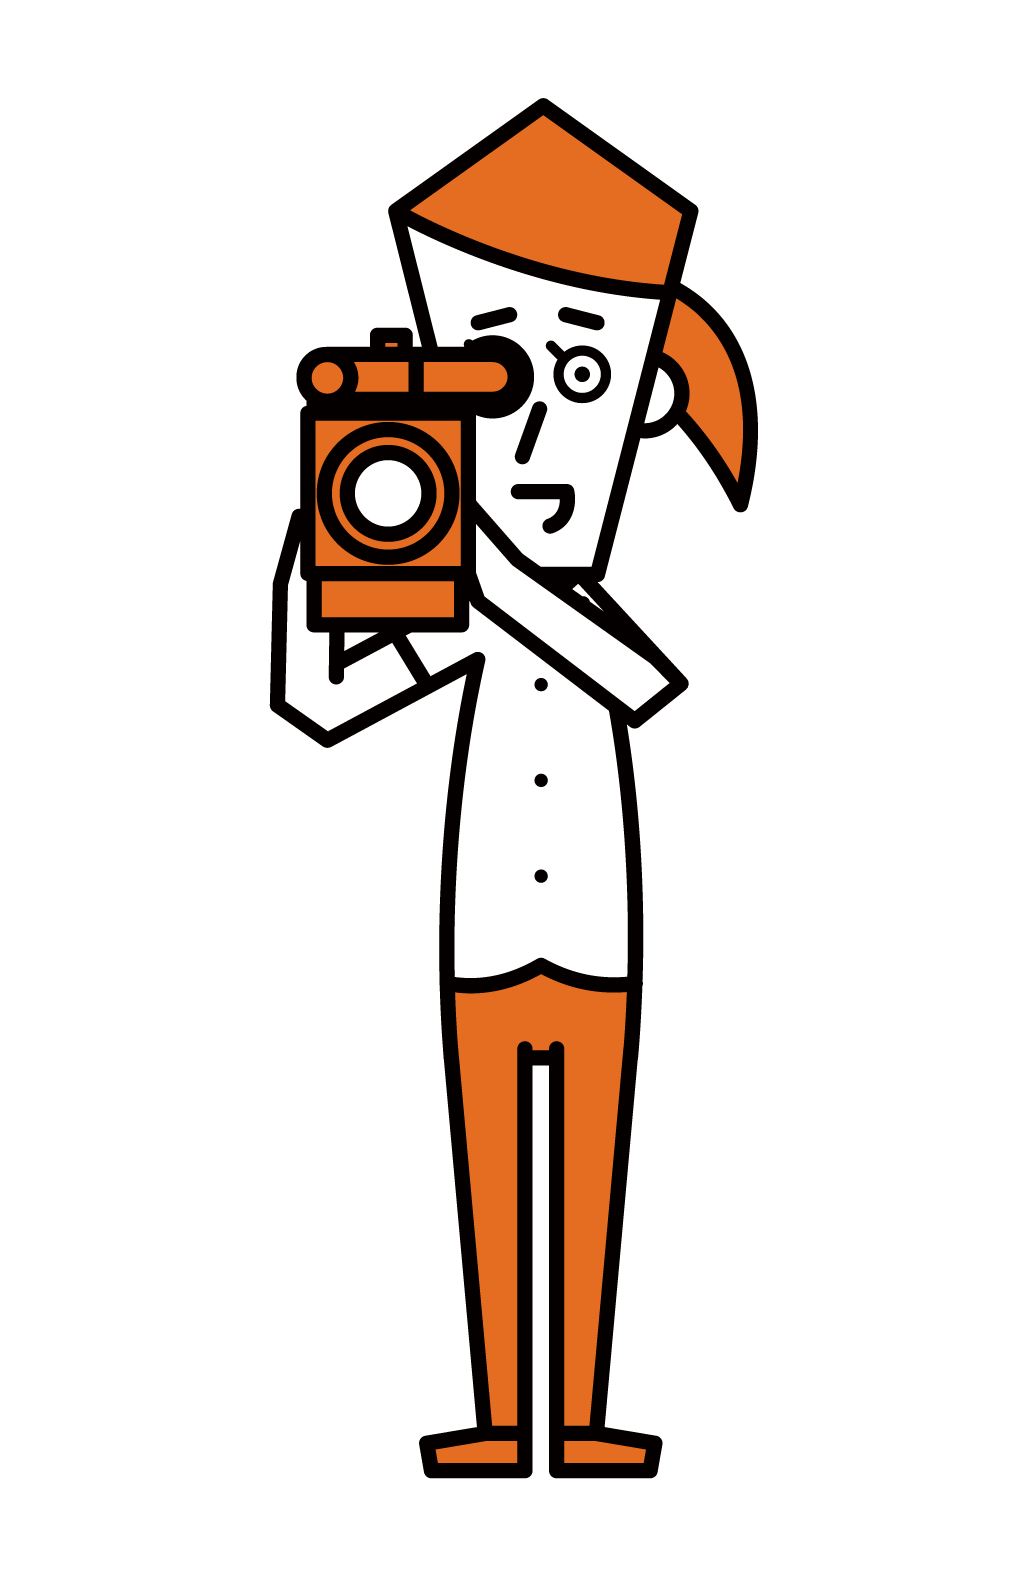 電視攝影師和電影製作人(女性)的插圖